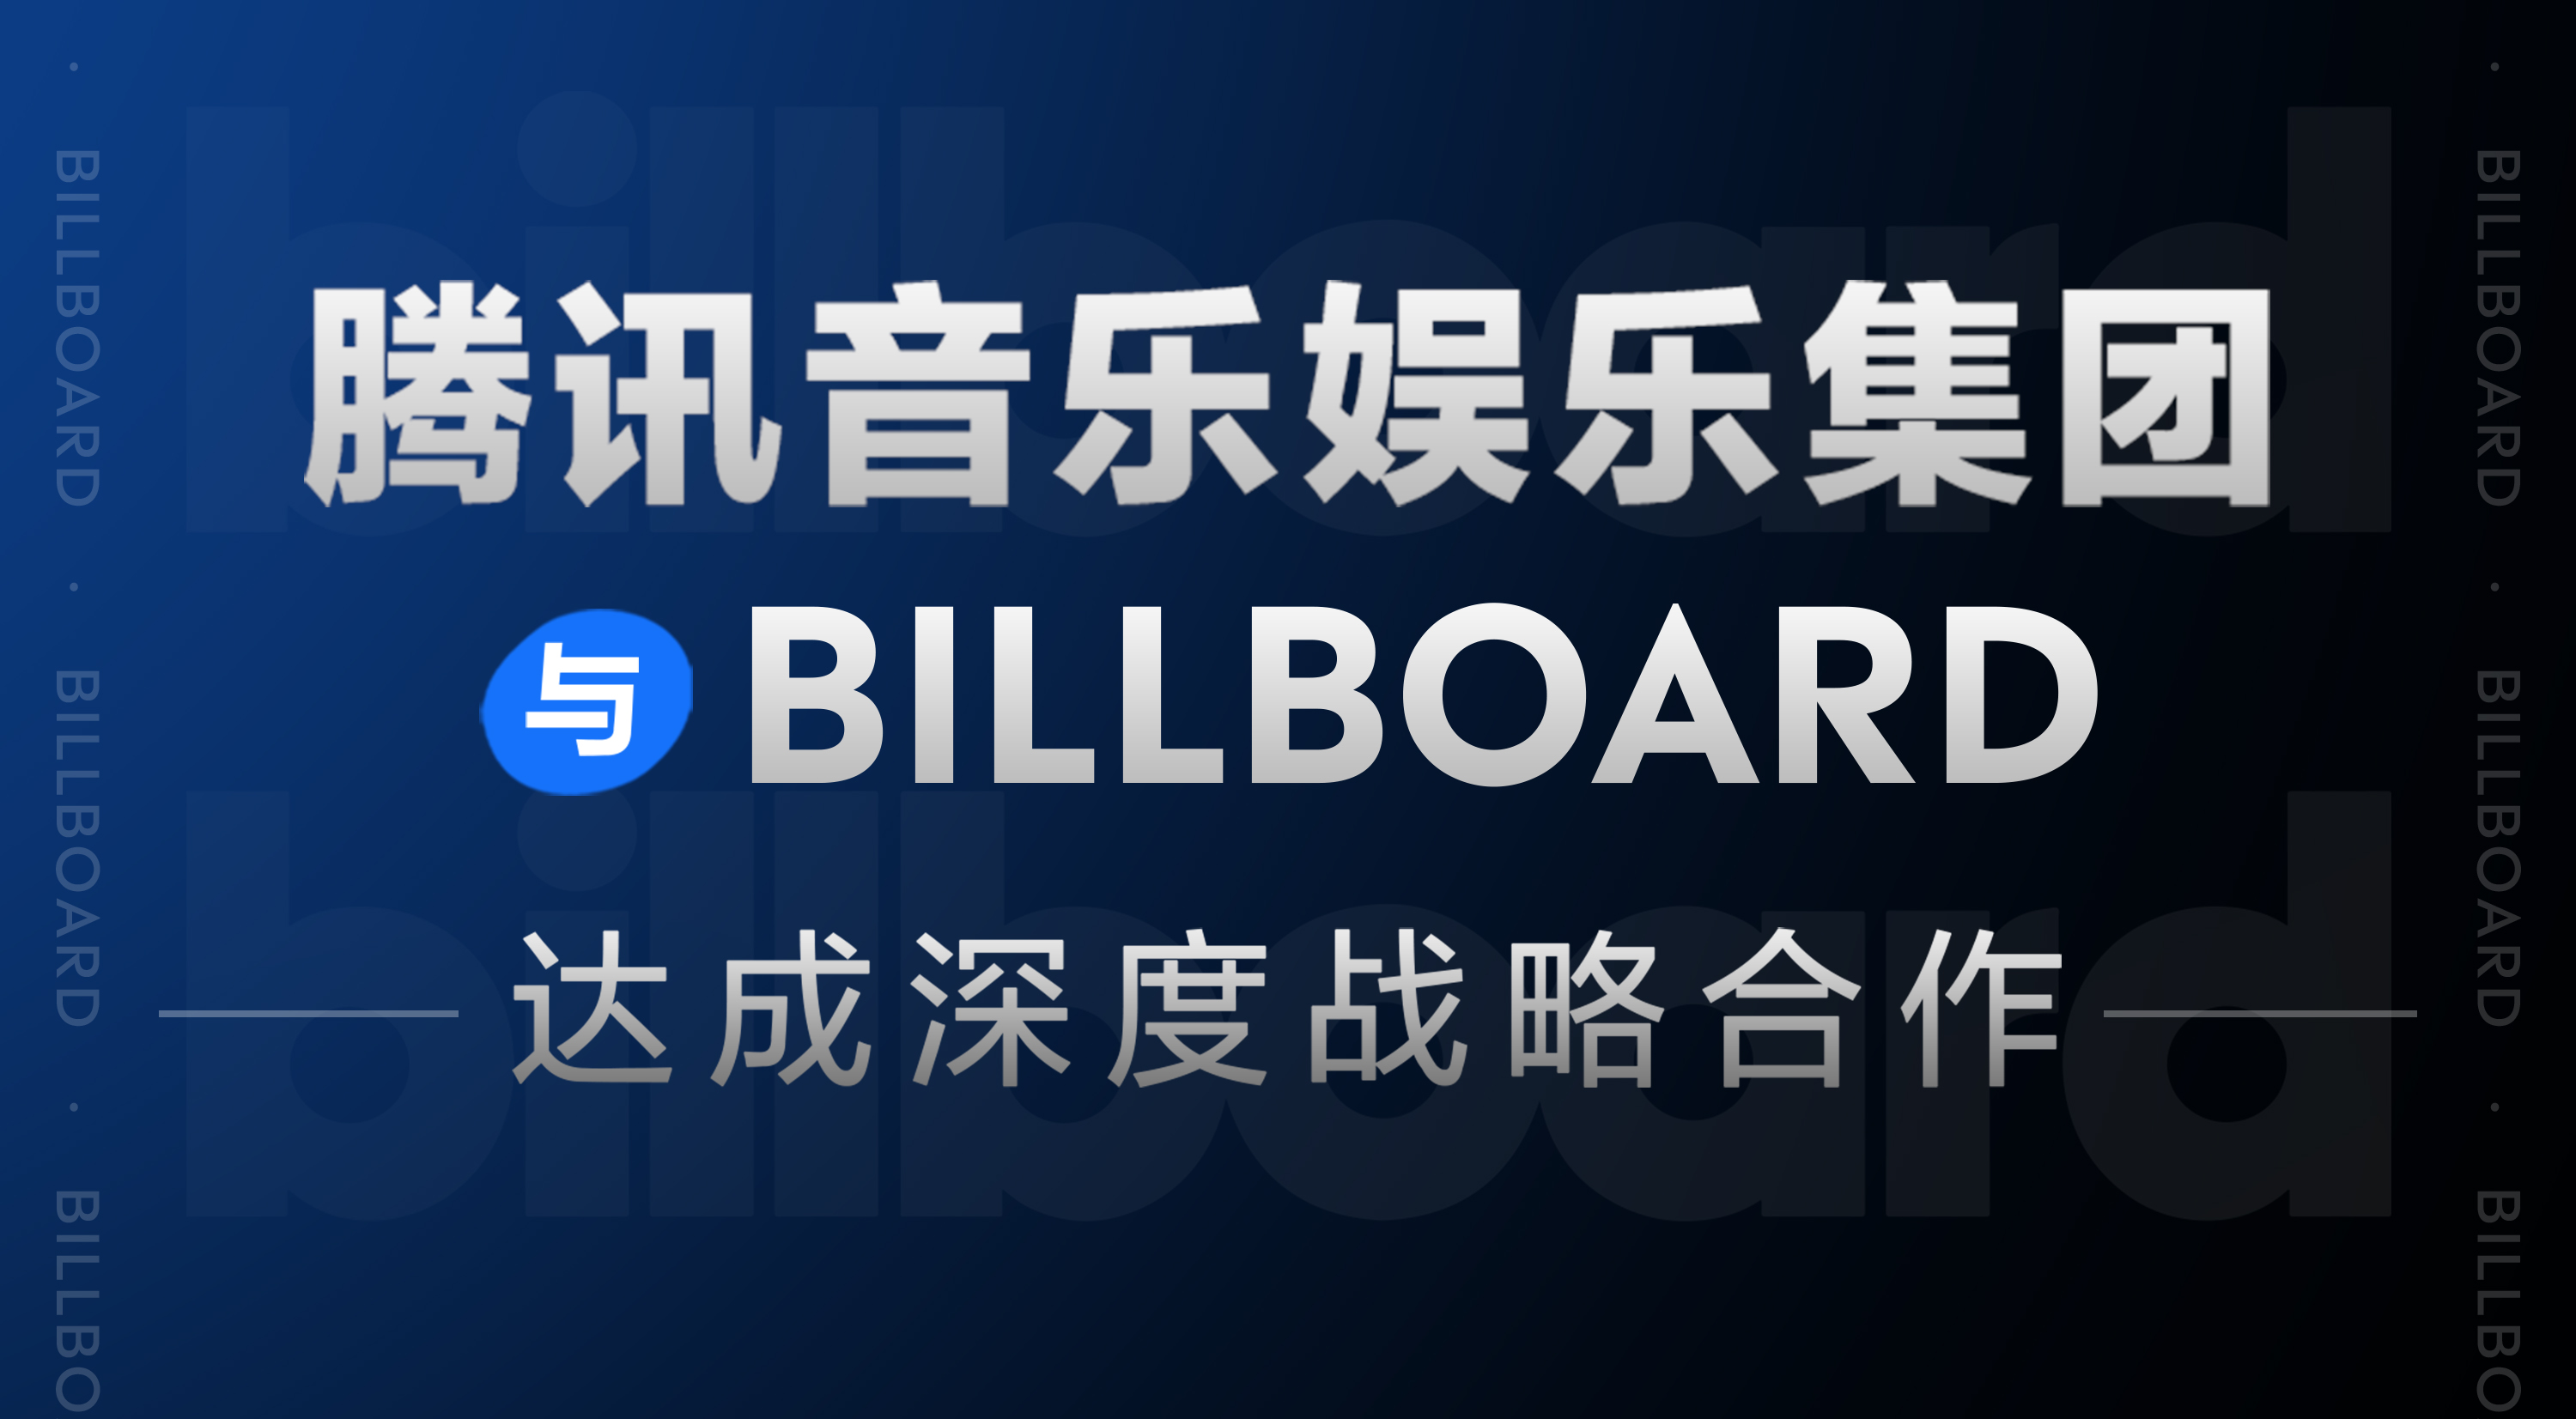 騰訊音樂娛樂集團與Billboard達成深度戰略合作 國際標準助力中國音樂影響力持續提升